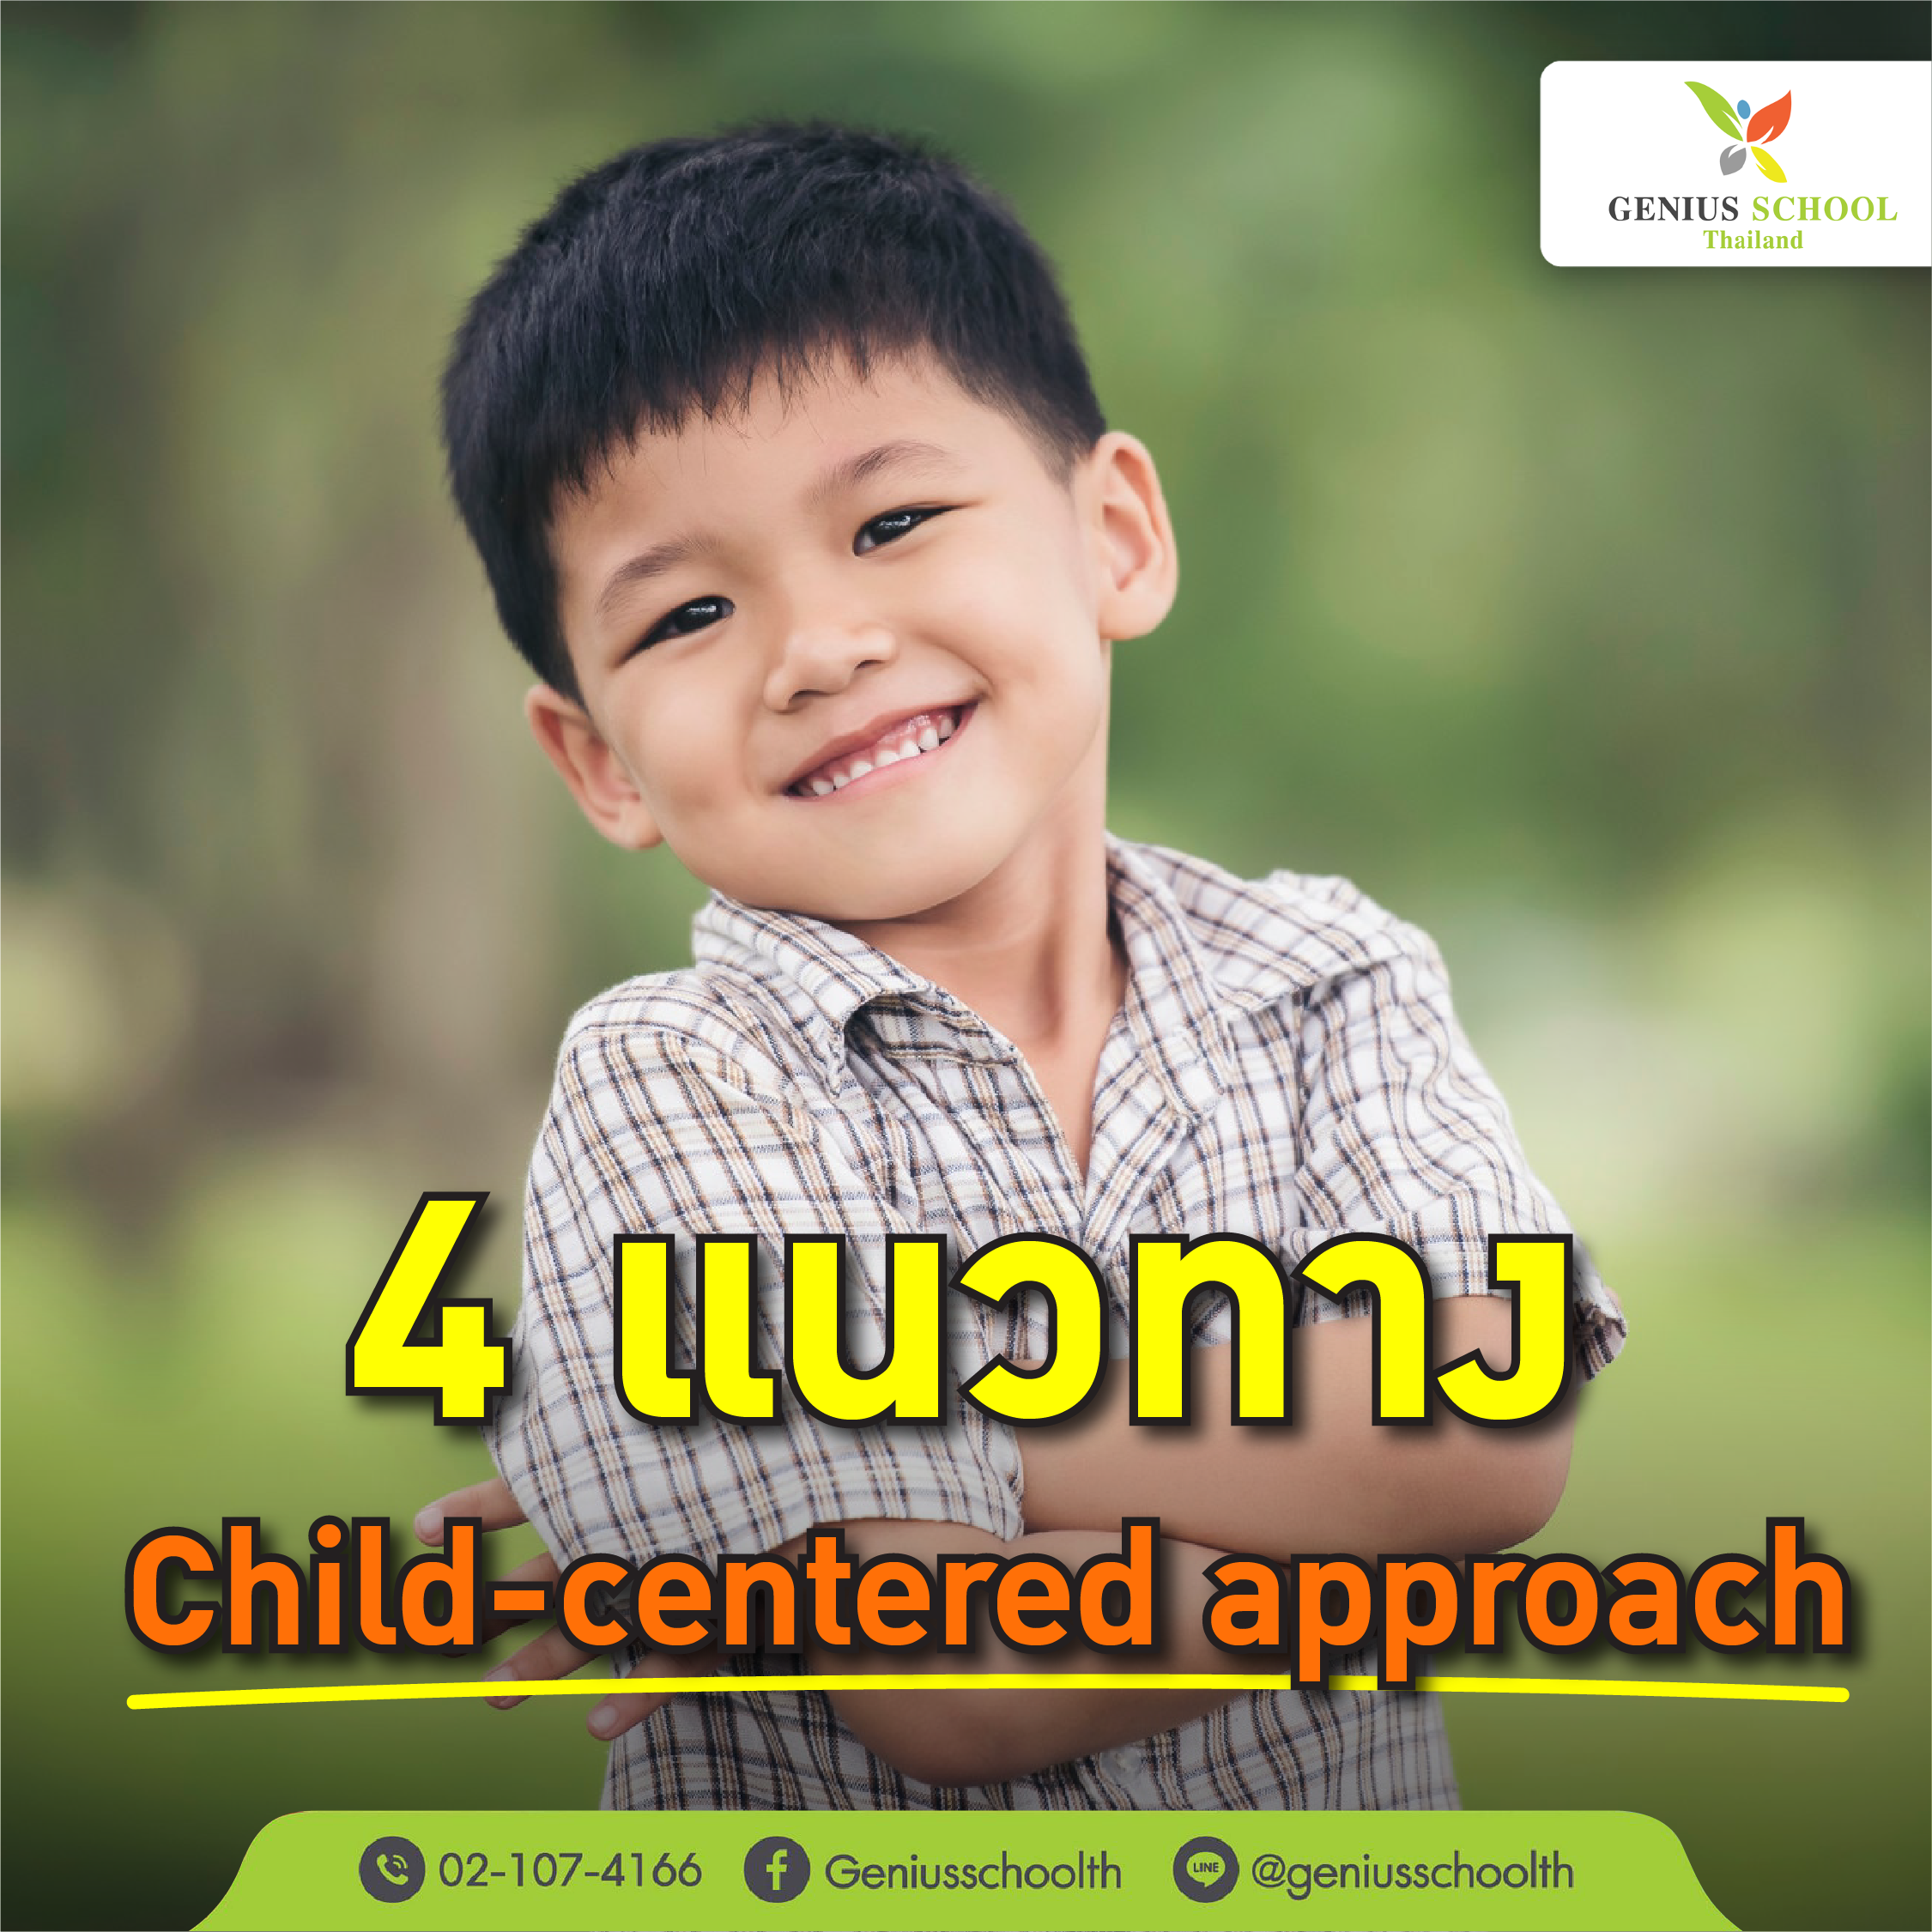 <h1>4 แนวทาง “พัฒนาครู” สู่ Child-centered approach</h1>